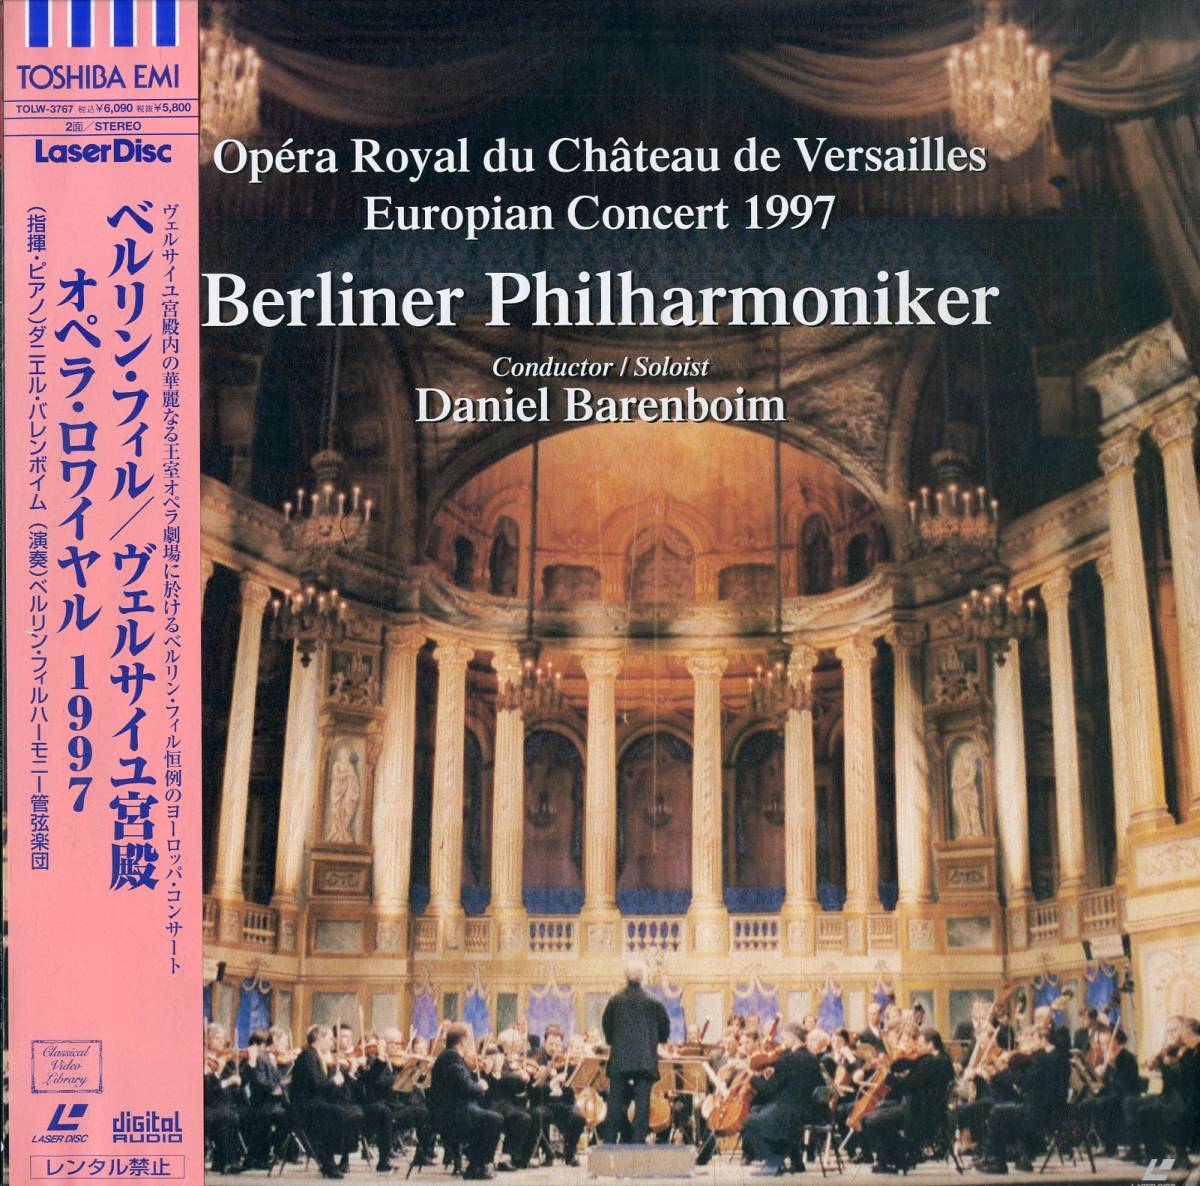 B00138353/LD/ダニエル・バレンボイム/ベルリン・フィル「ヴェルサイユ宮殿オペラ・ロワイヤル 1997」の画像1